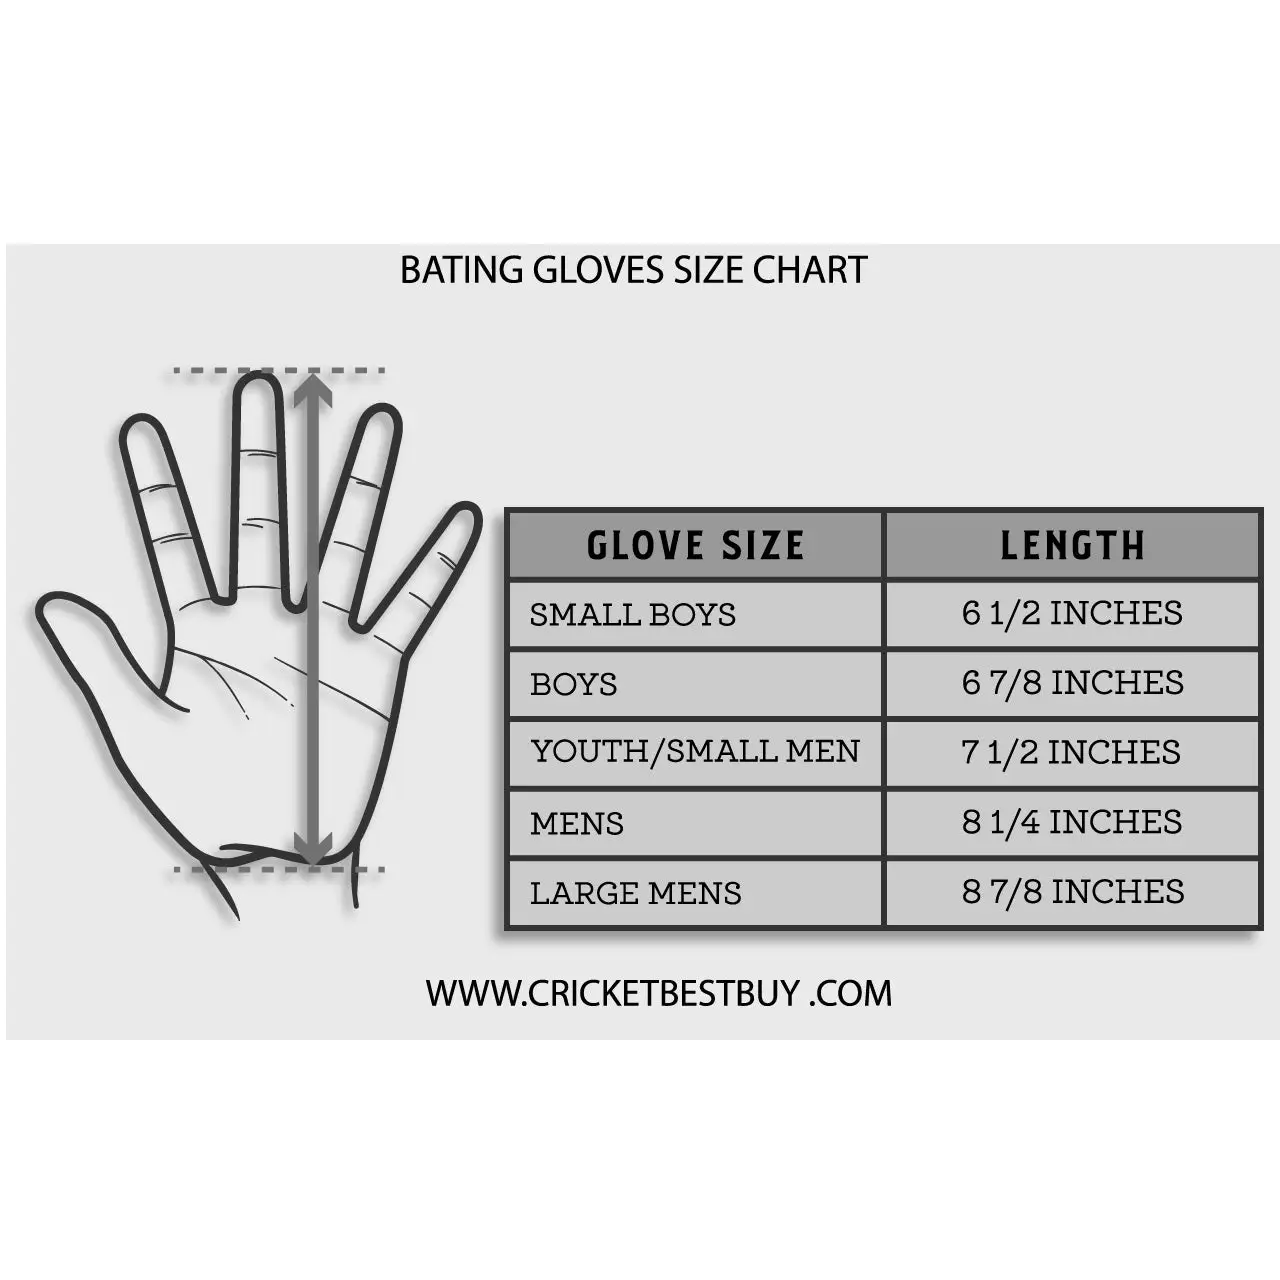 MRF Genius Grand Edition 1.0 Cricket Batting Gloves - Men LH - GLOVE - BATTING